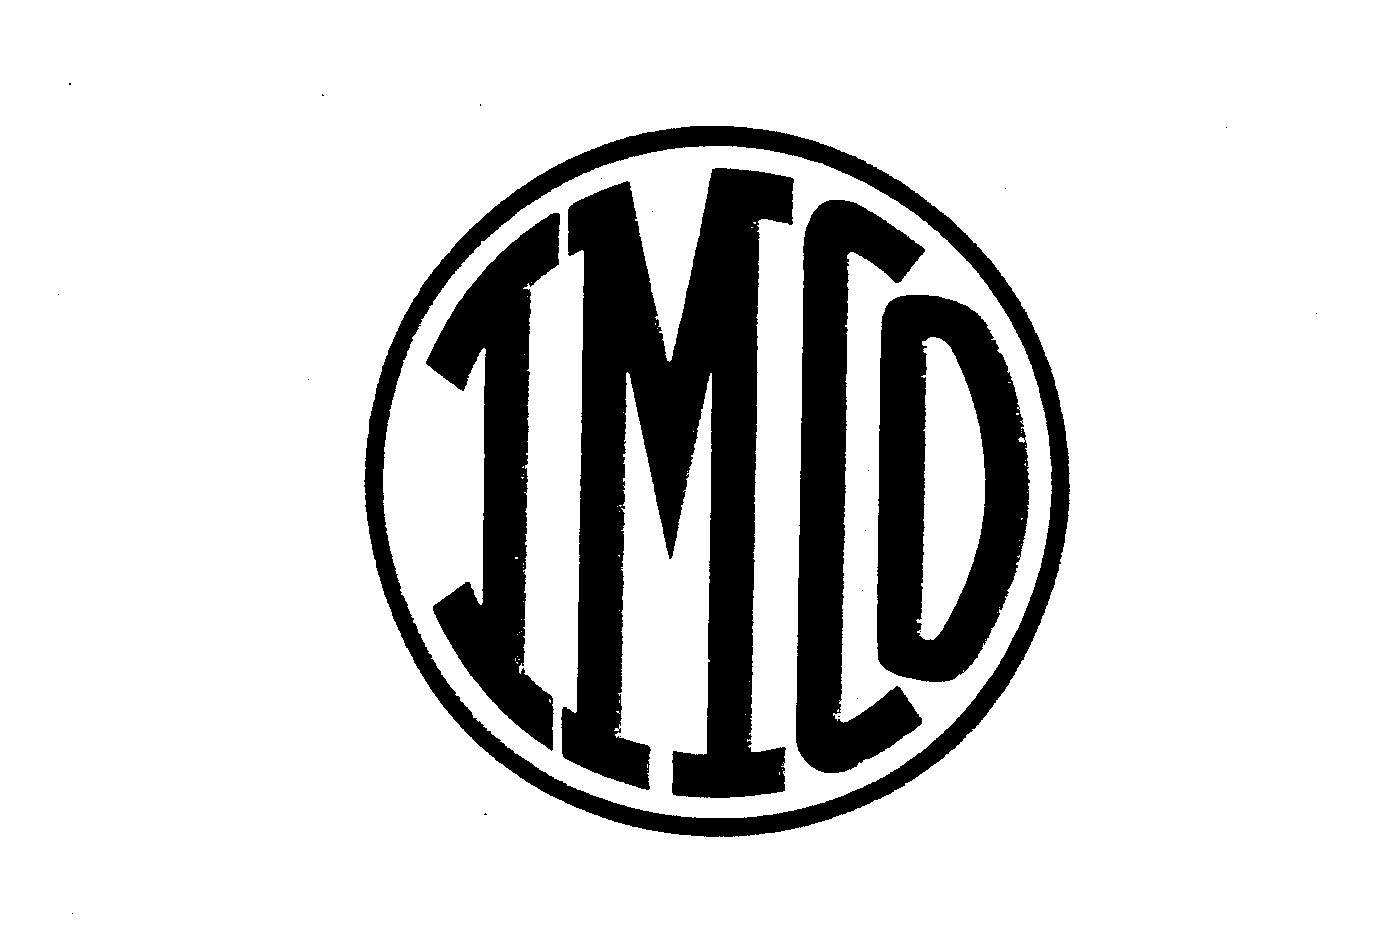 Trademark Logo IMCO